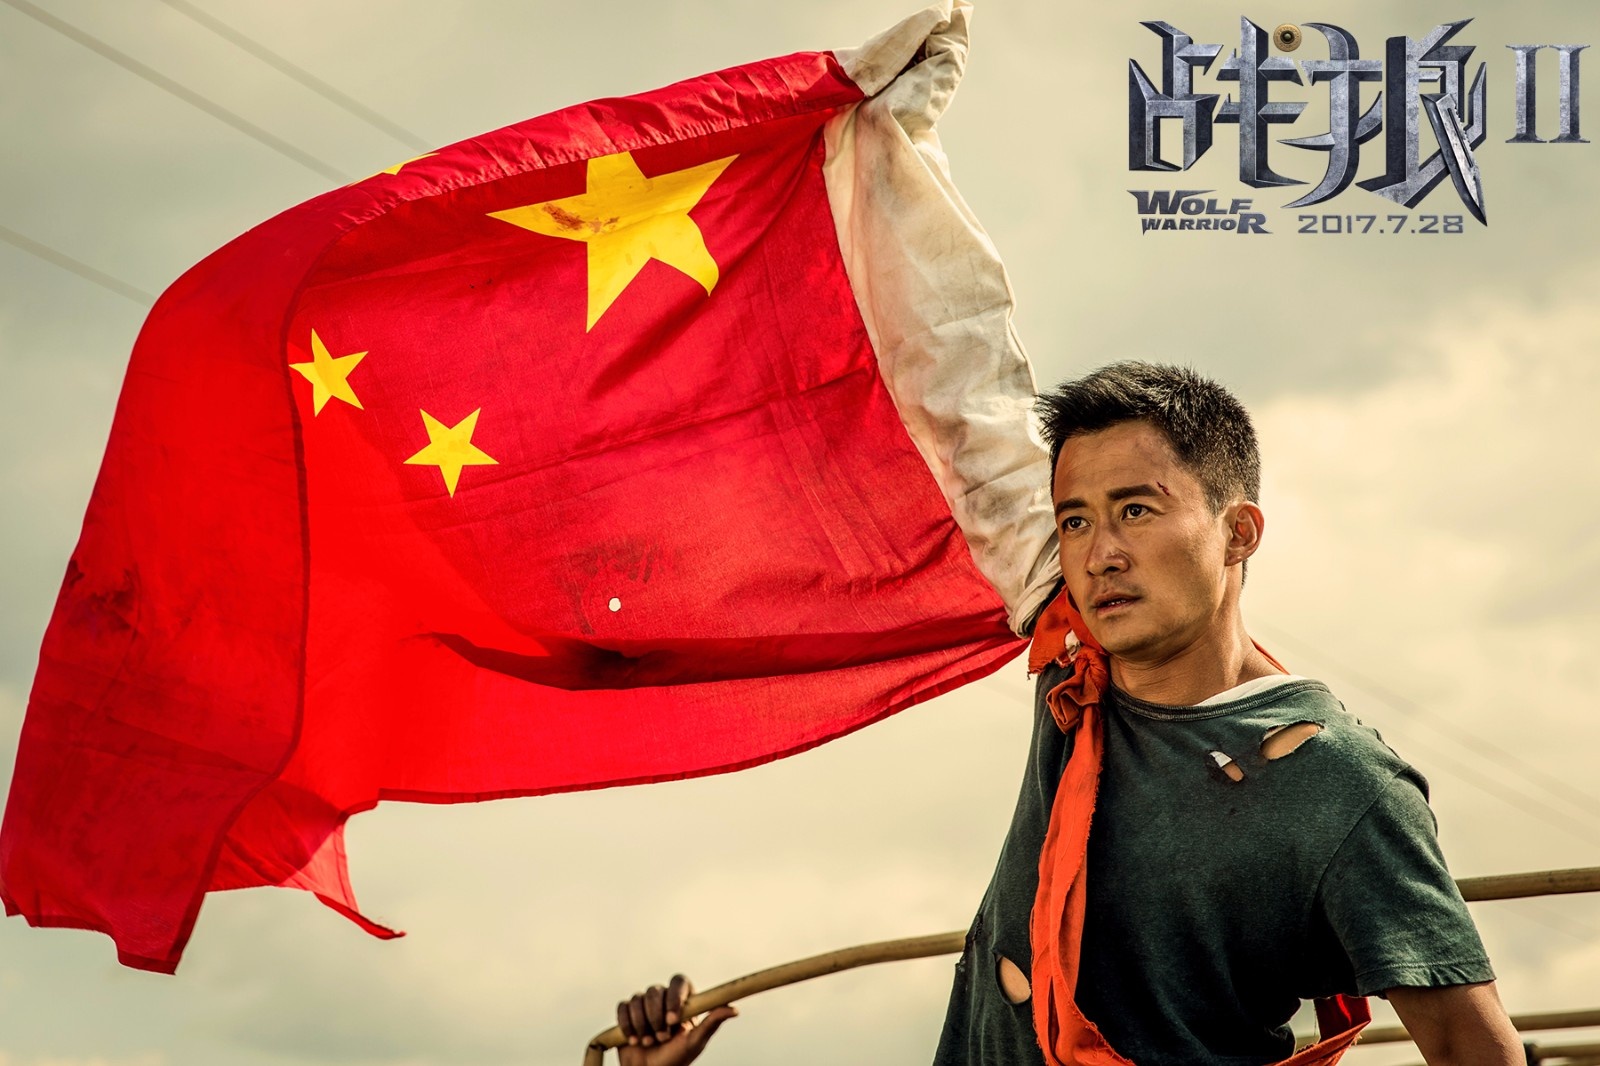 中国电影走出去,吴京凭借《战狼2》迈出一大步